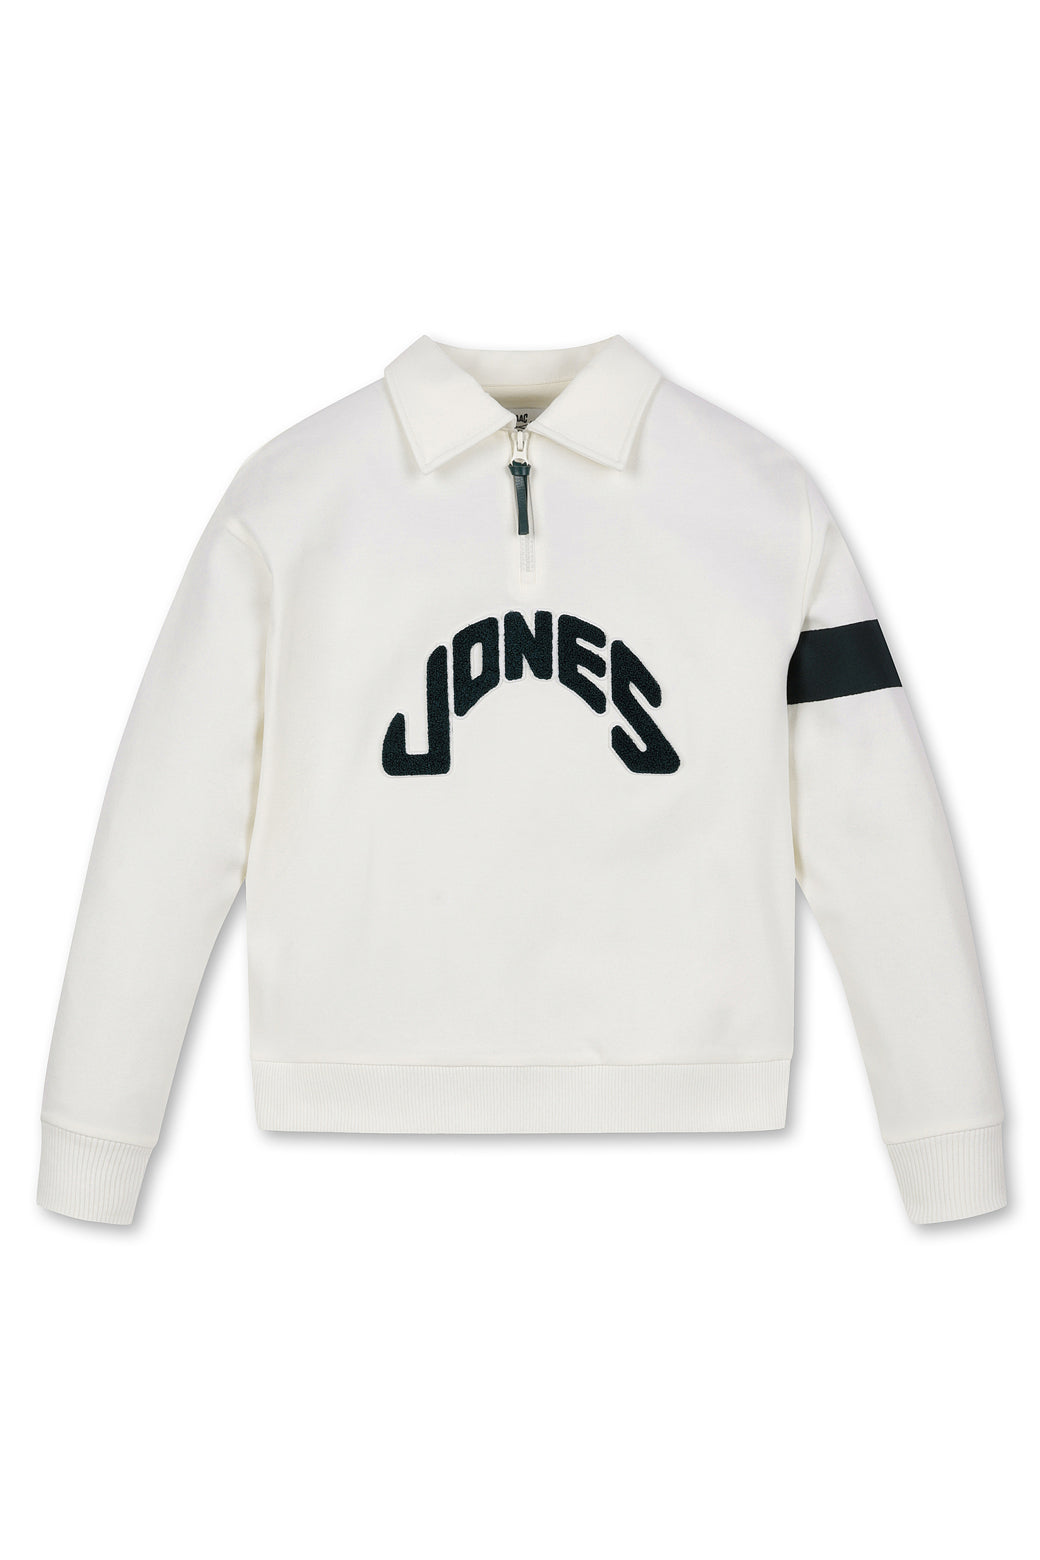 Jones x WAAC Women's Fairway Sweatshirt - Le Creme